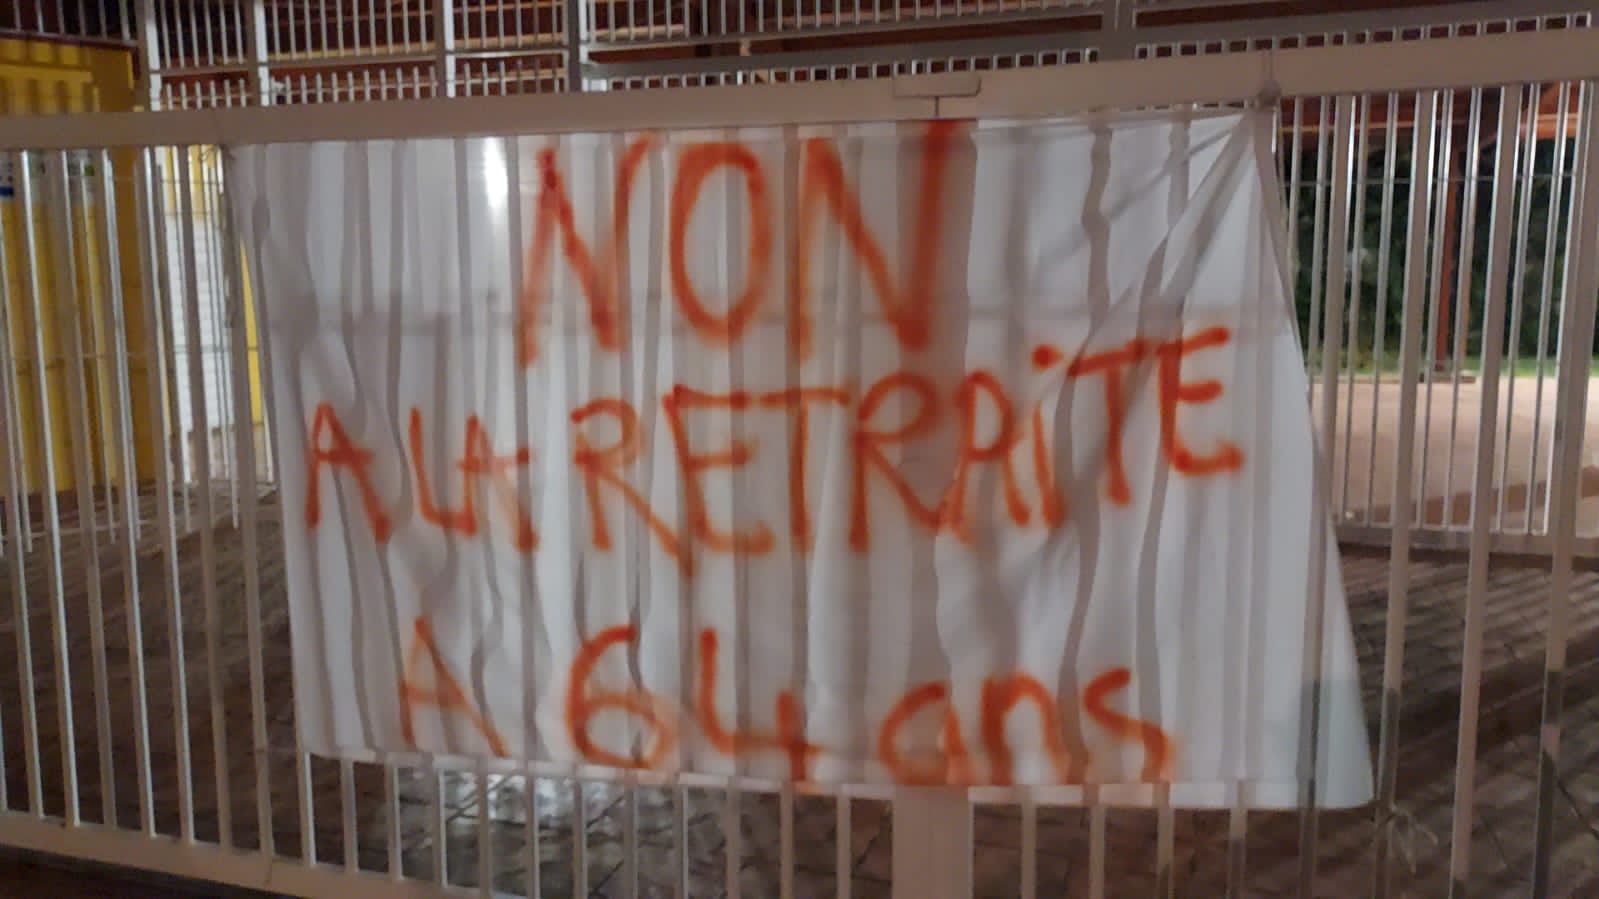     Établissements scolaires bloqués : l’Académie Guadeloupe regrette « l’impact » pour les élèves

